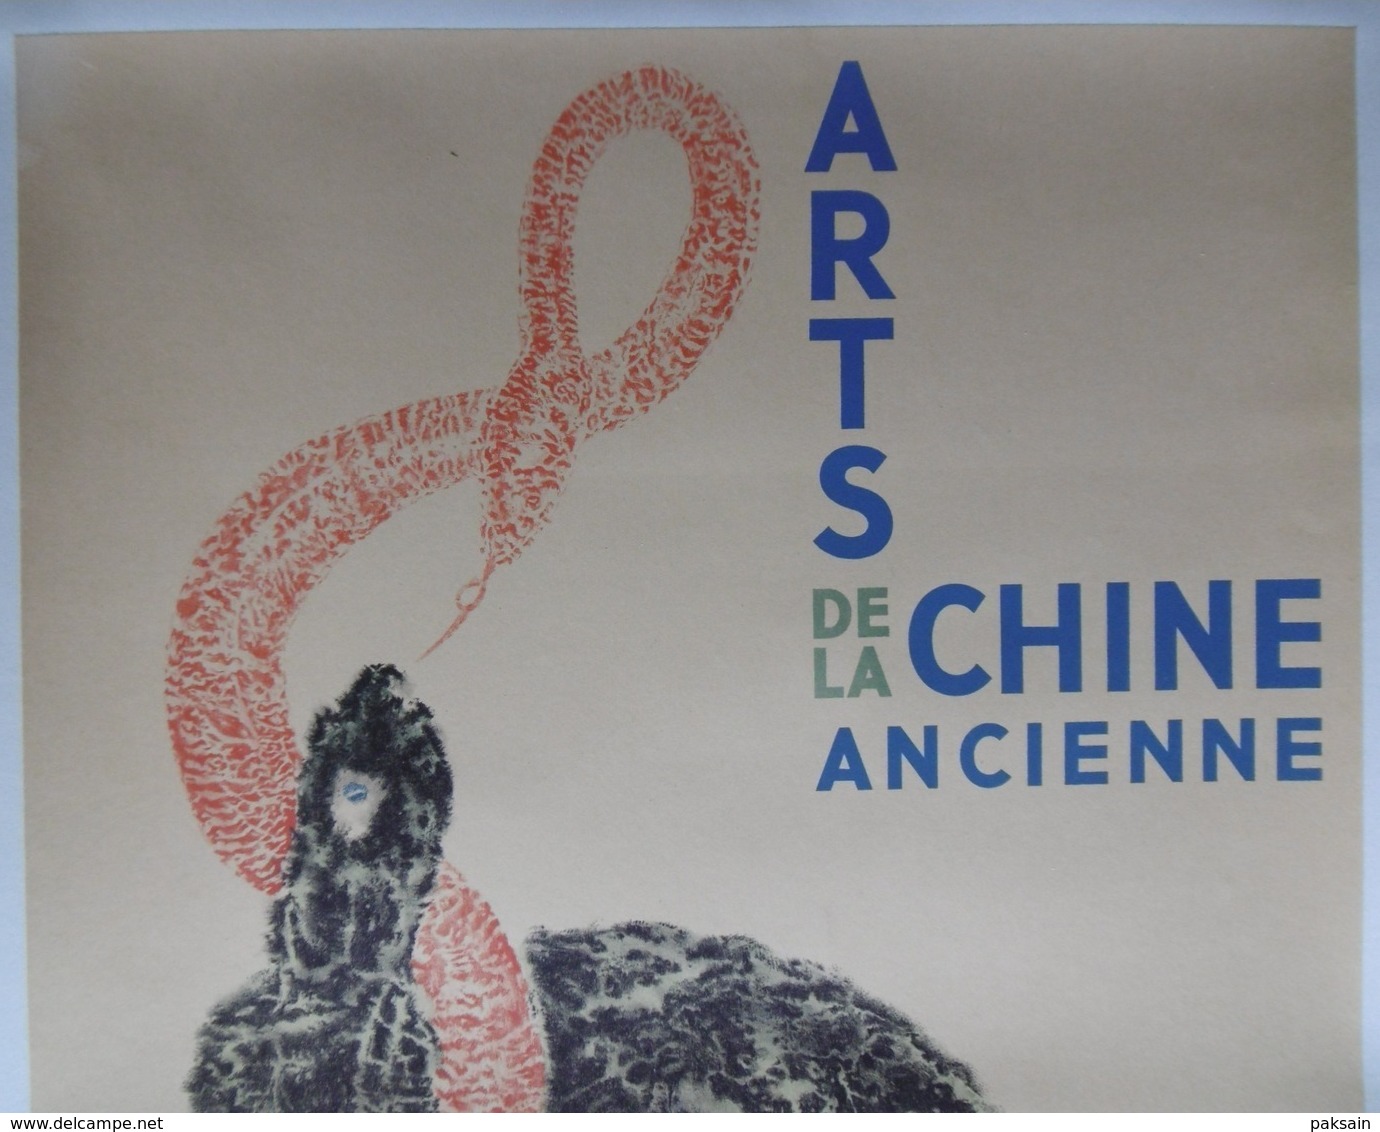 Arts De La Chine Ancienne Affiche Originale 1937 Paris A L'Orangerie Des Tuileries China Chinese Poster - Posters